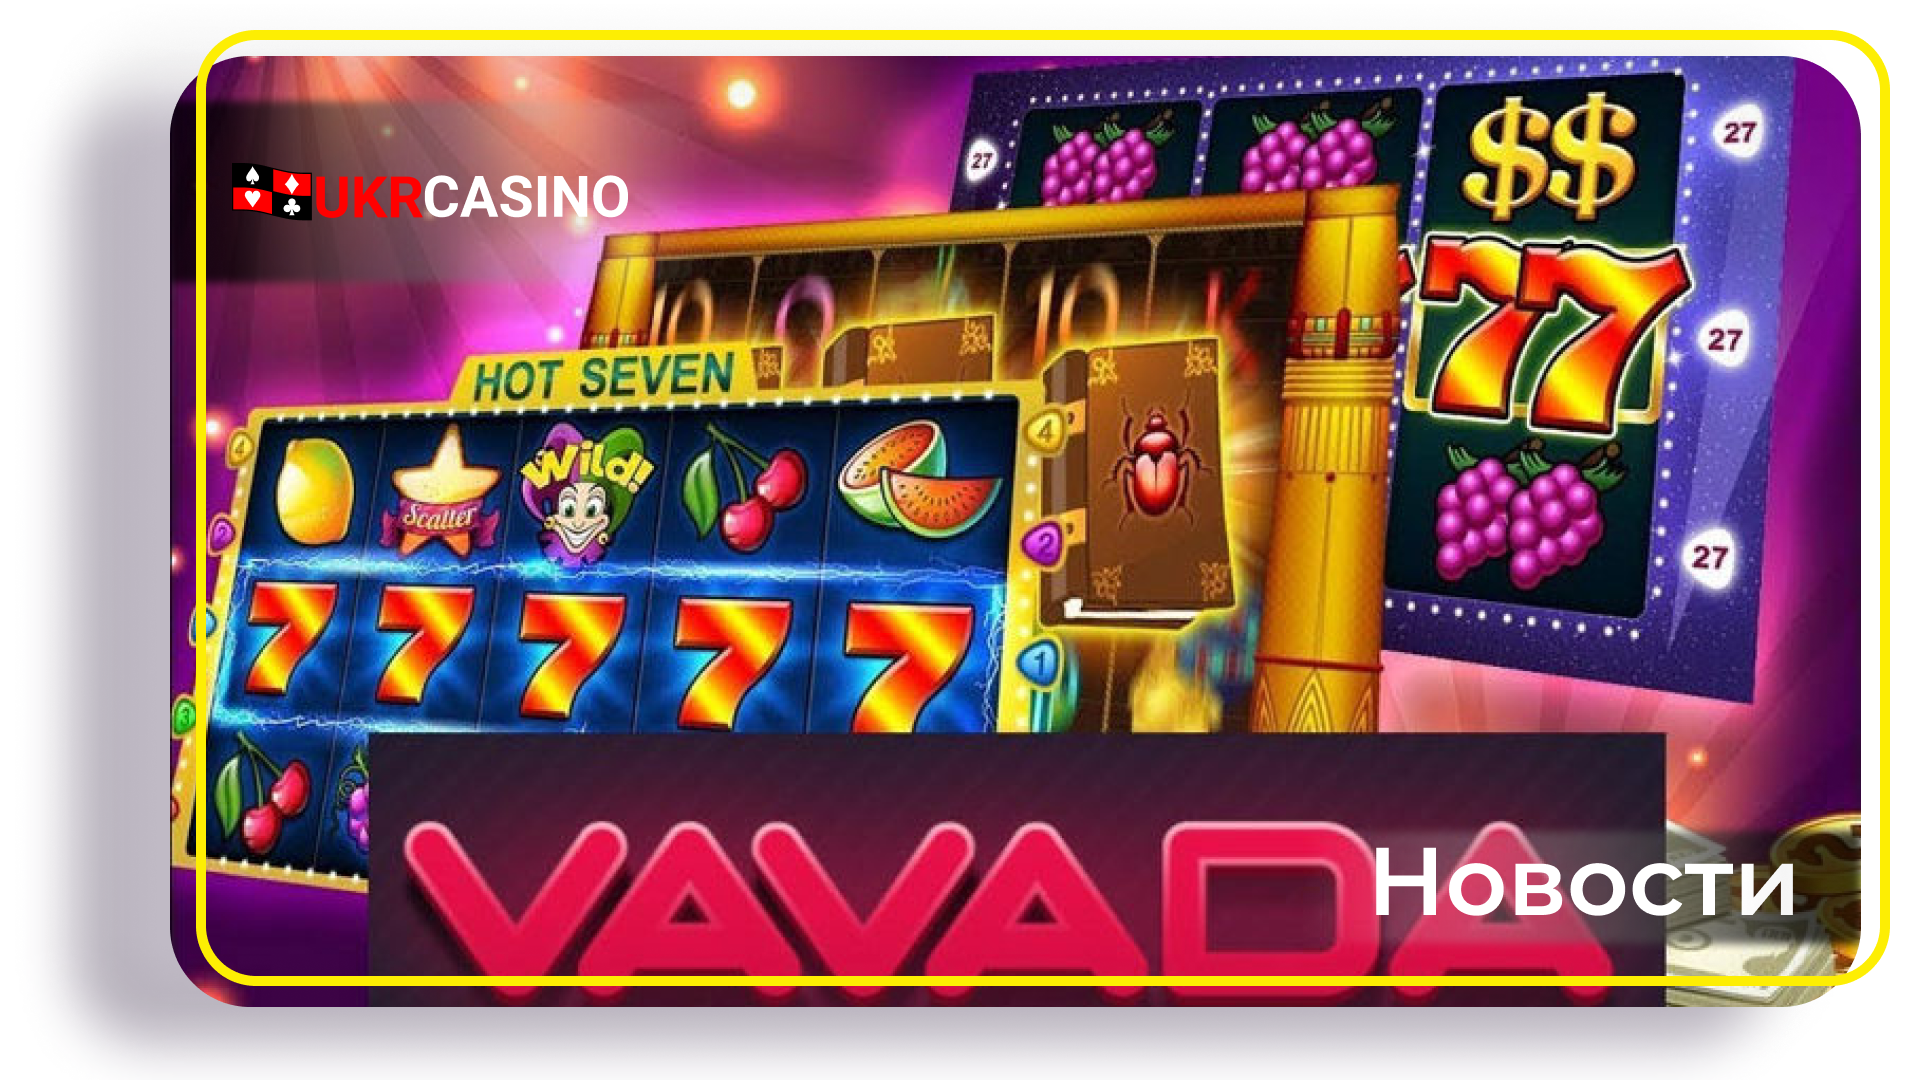 Турниры в онлайн-казино Vavada